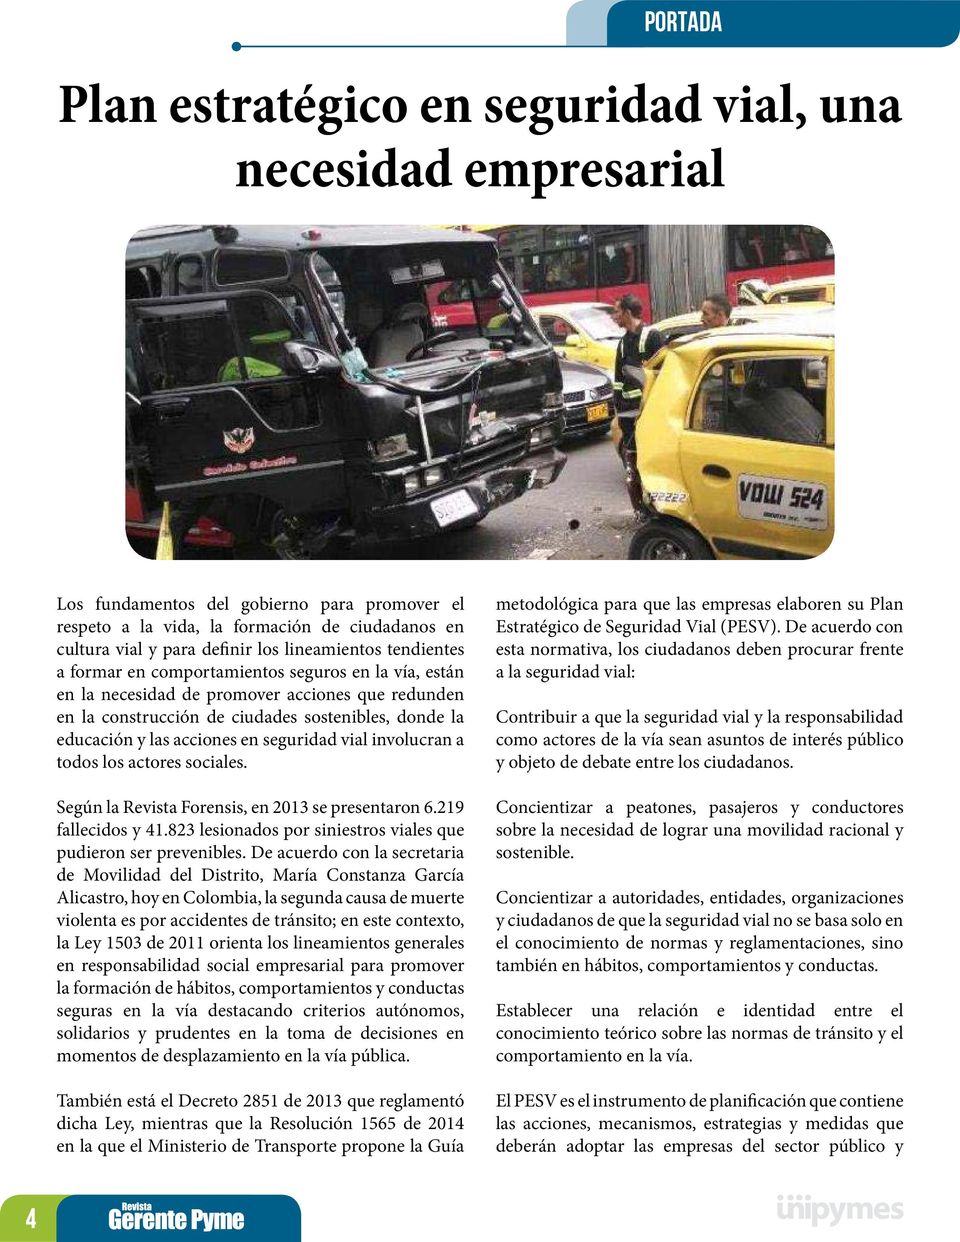 acciones en seguridad vial involucran a todos los actores sociales. Según la Revista Forensis, en 2013 se presentaron 6.219 fallecidos y 41.